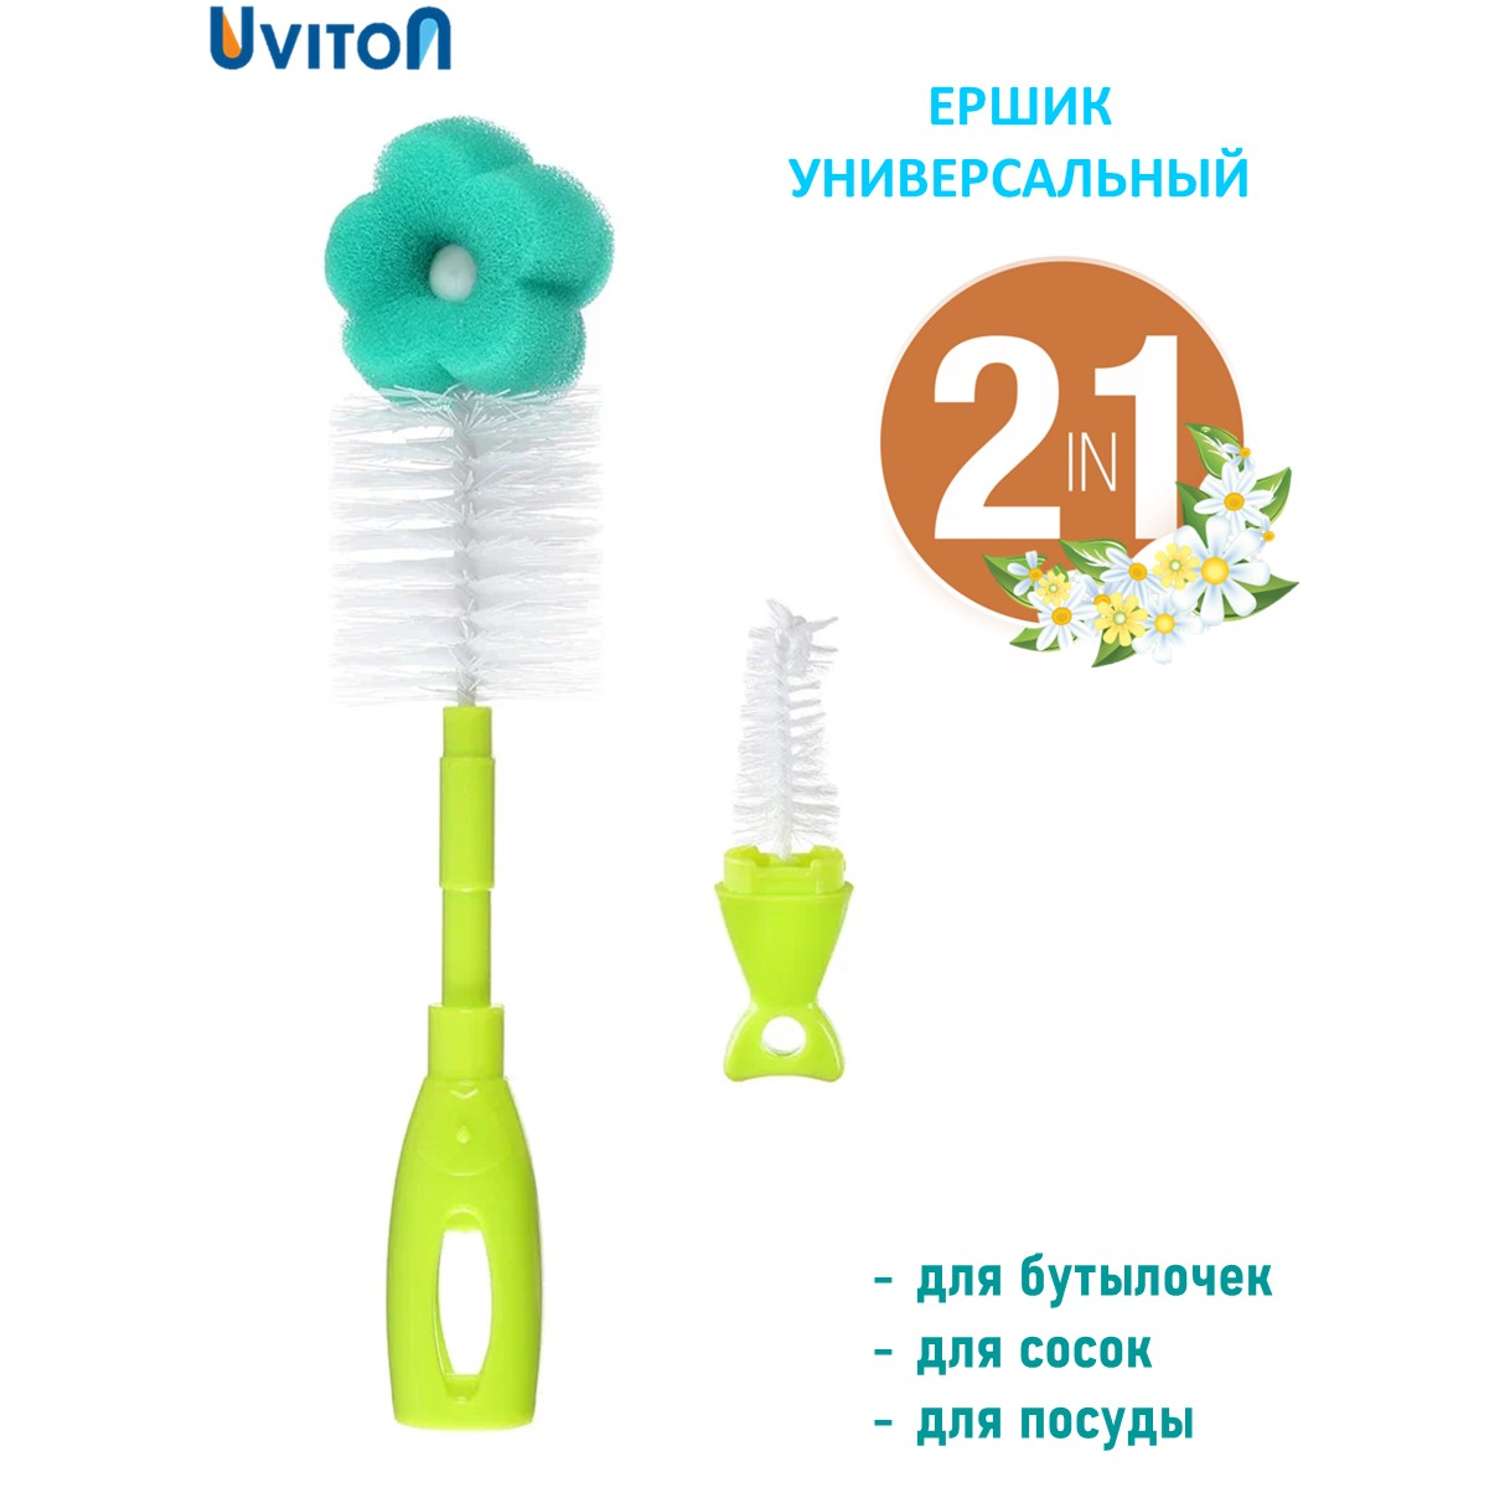 Ершик Uviton для мытья бутылочек с губкой Flower - фото 12